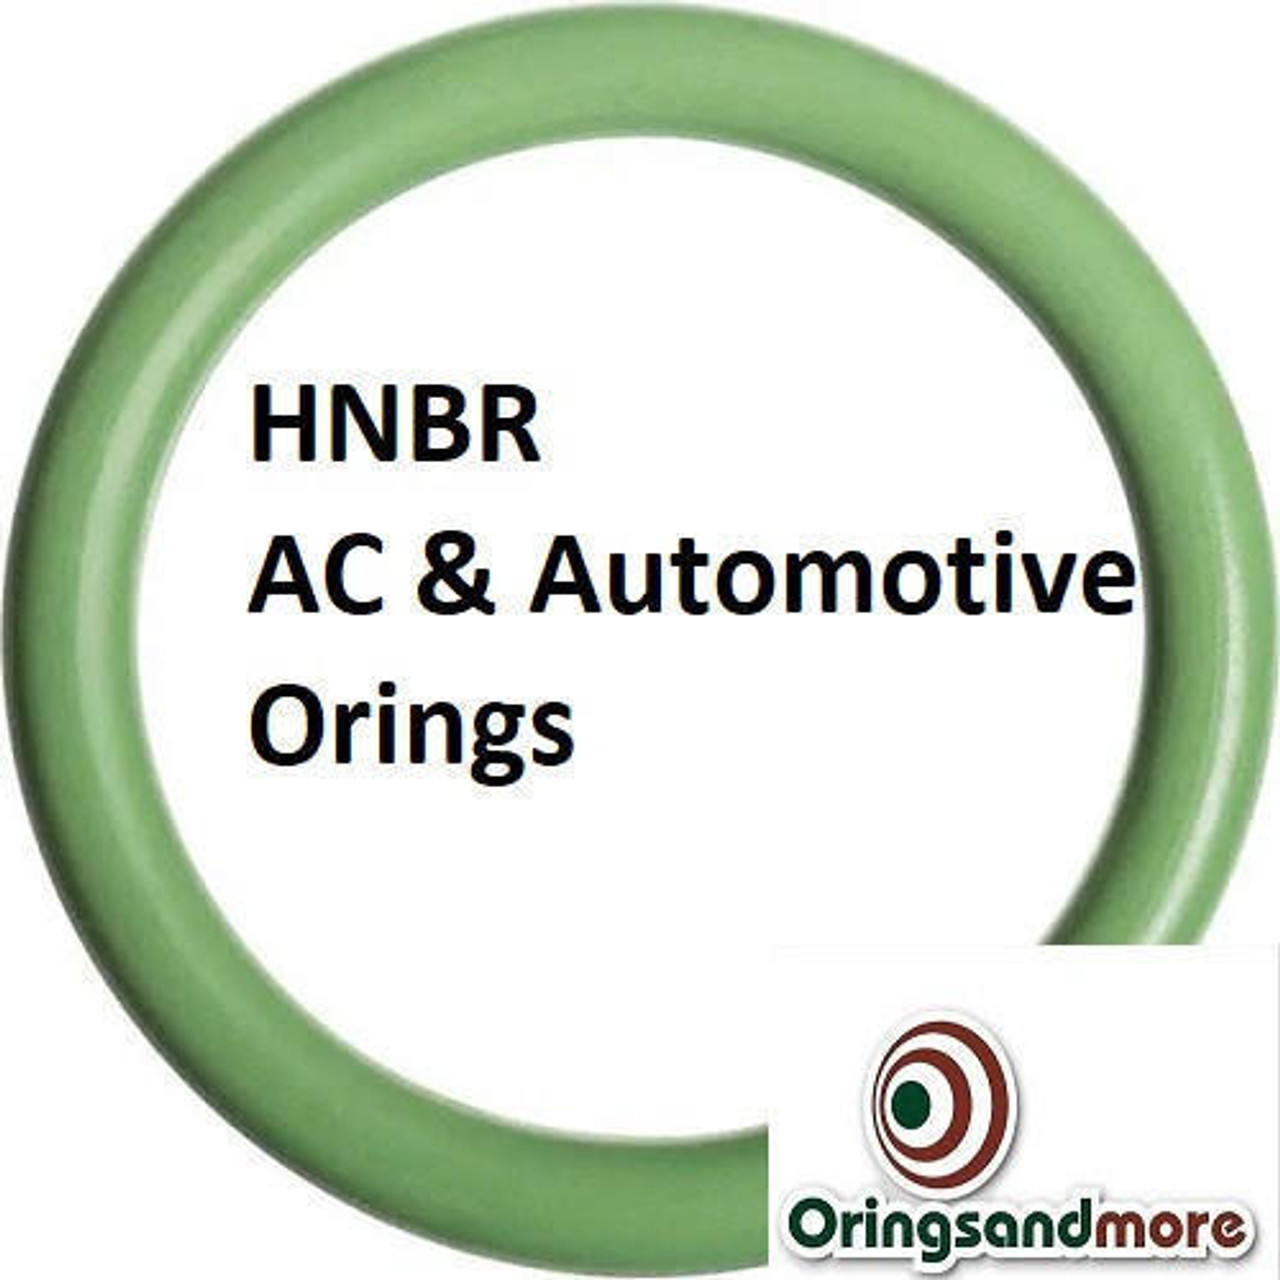 HNBR Orings  # 141-70D Green Minimum 4 pcs